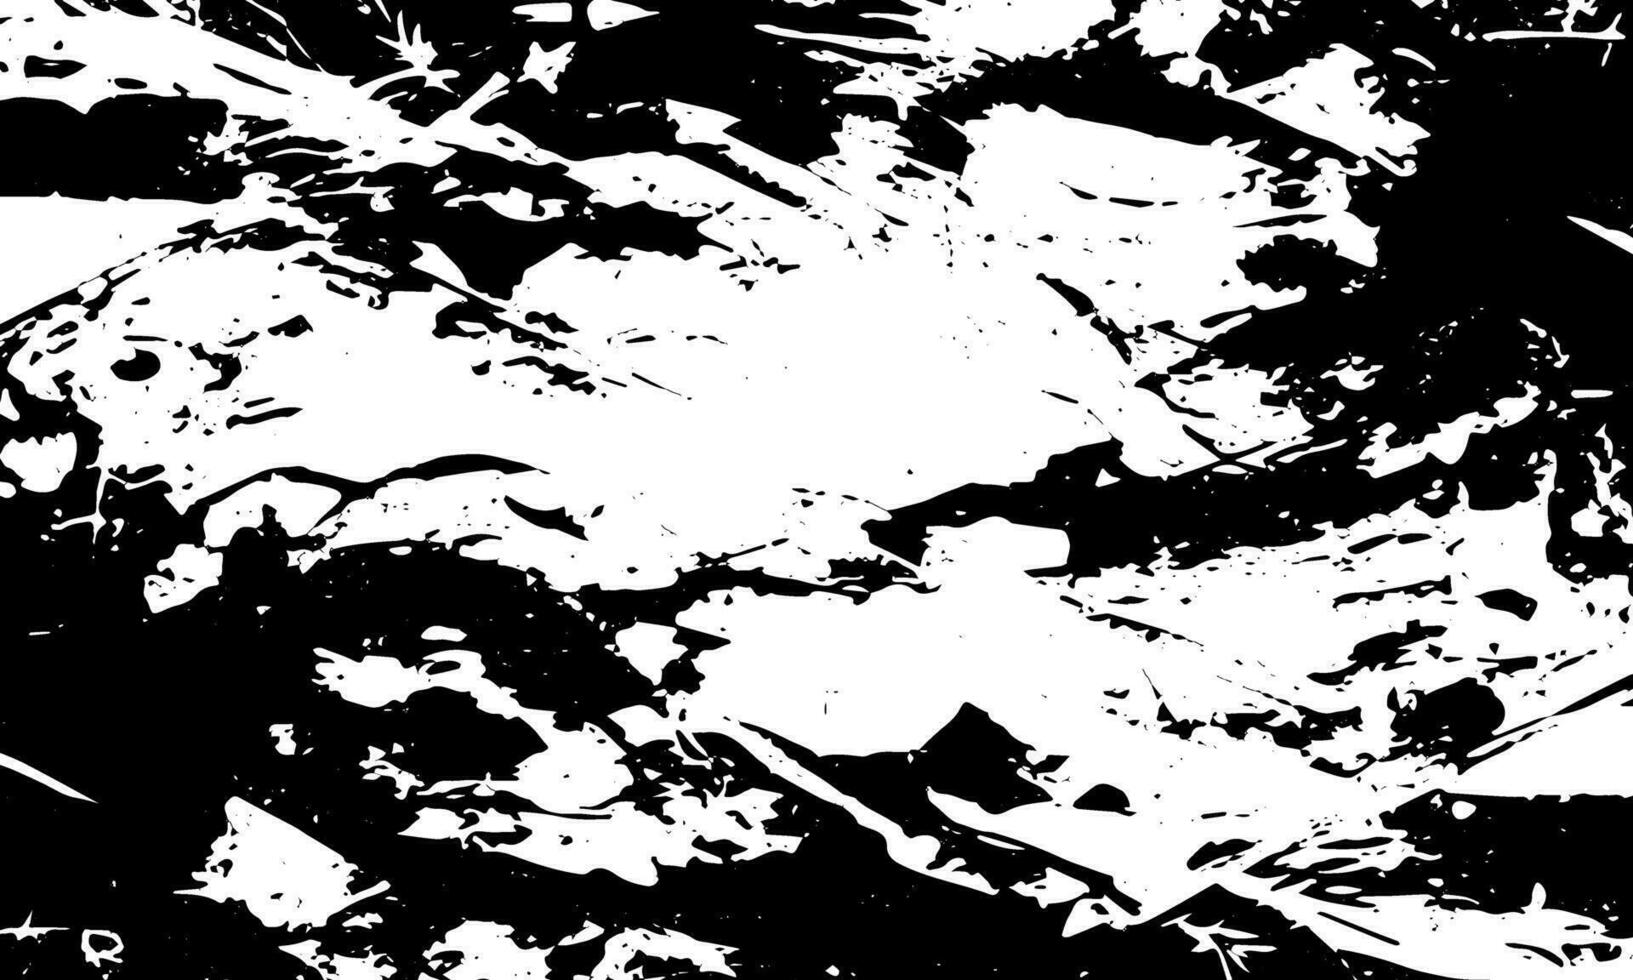 zwart en wit grunge achtergrond met spetters vector